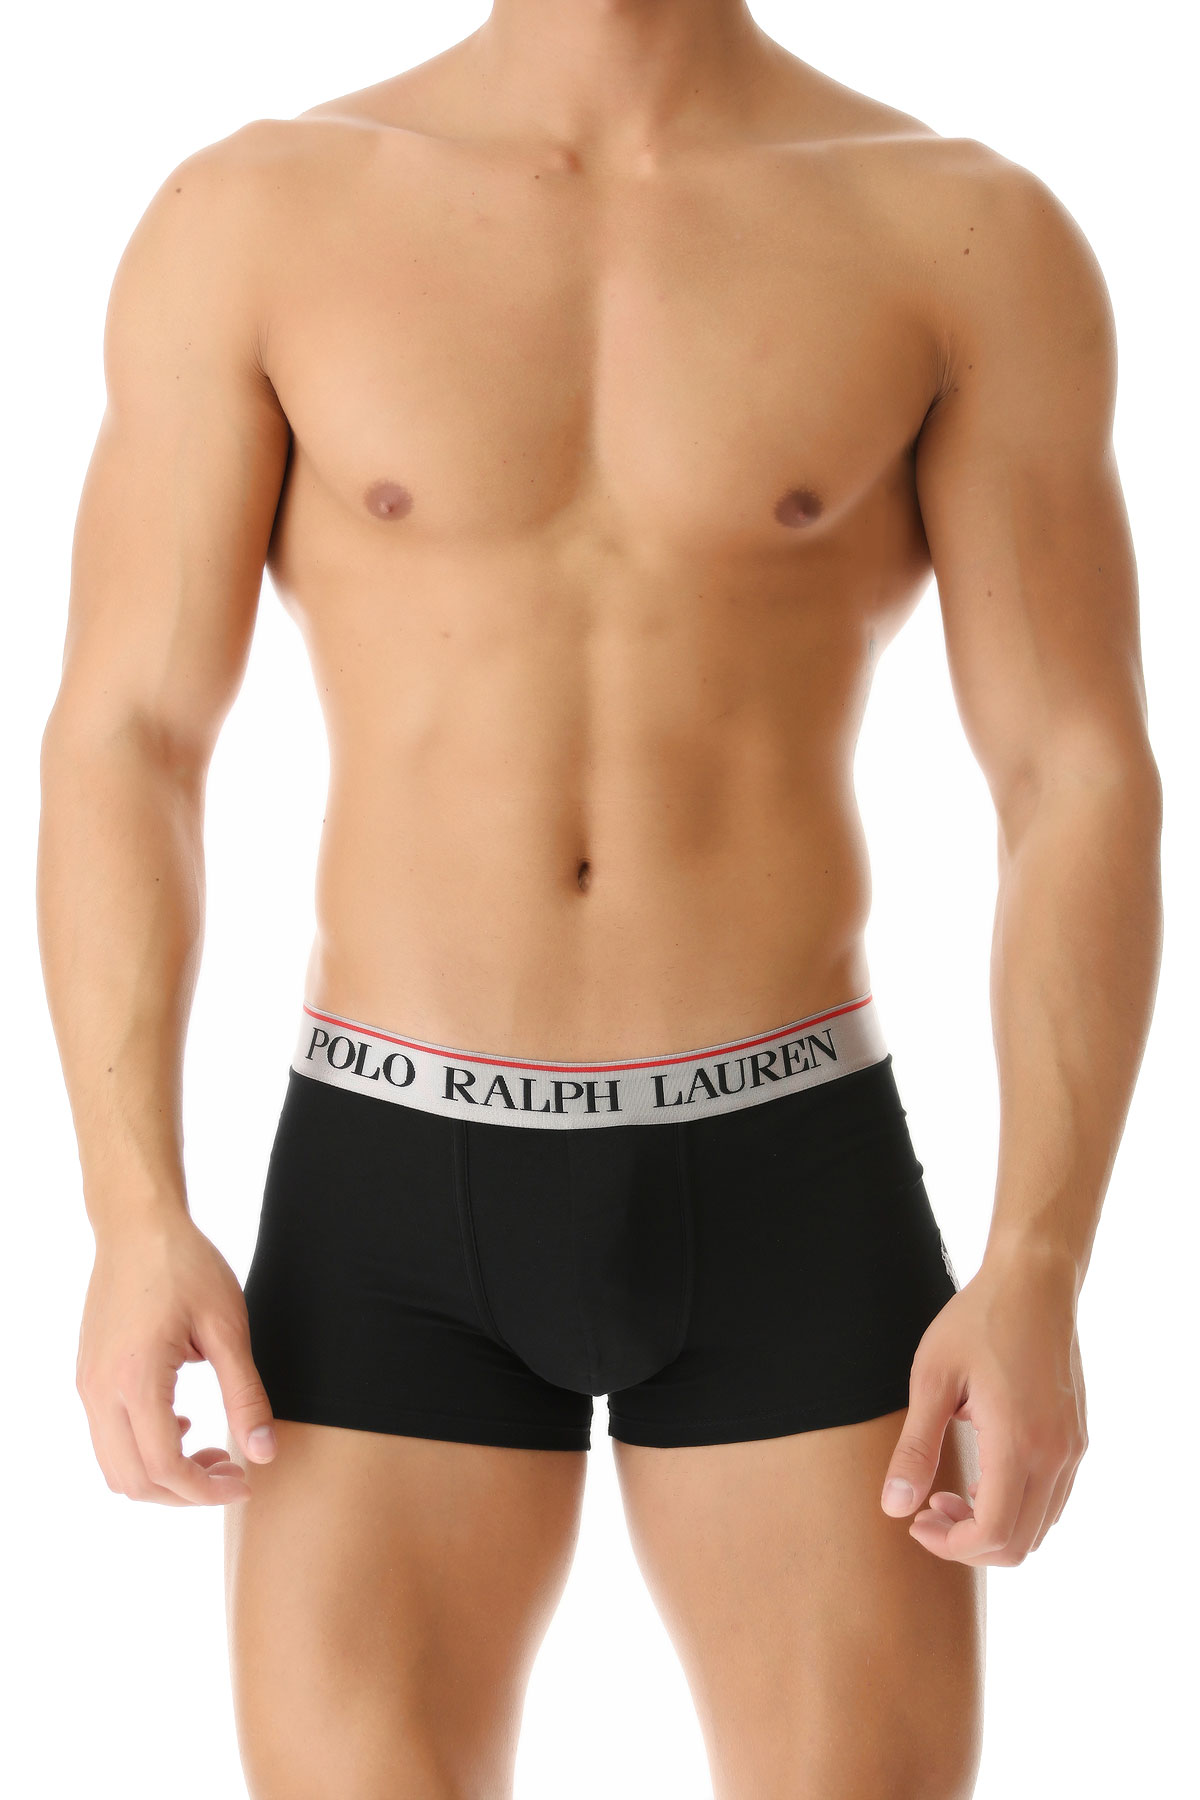 Ralph Lauren Boxer Shorts für Herren, Unterhose, Short, Boxer Günstig im Sale, Schwarz, Baumwolle, 2017, L M S XL